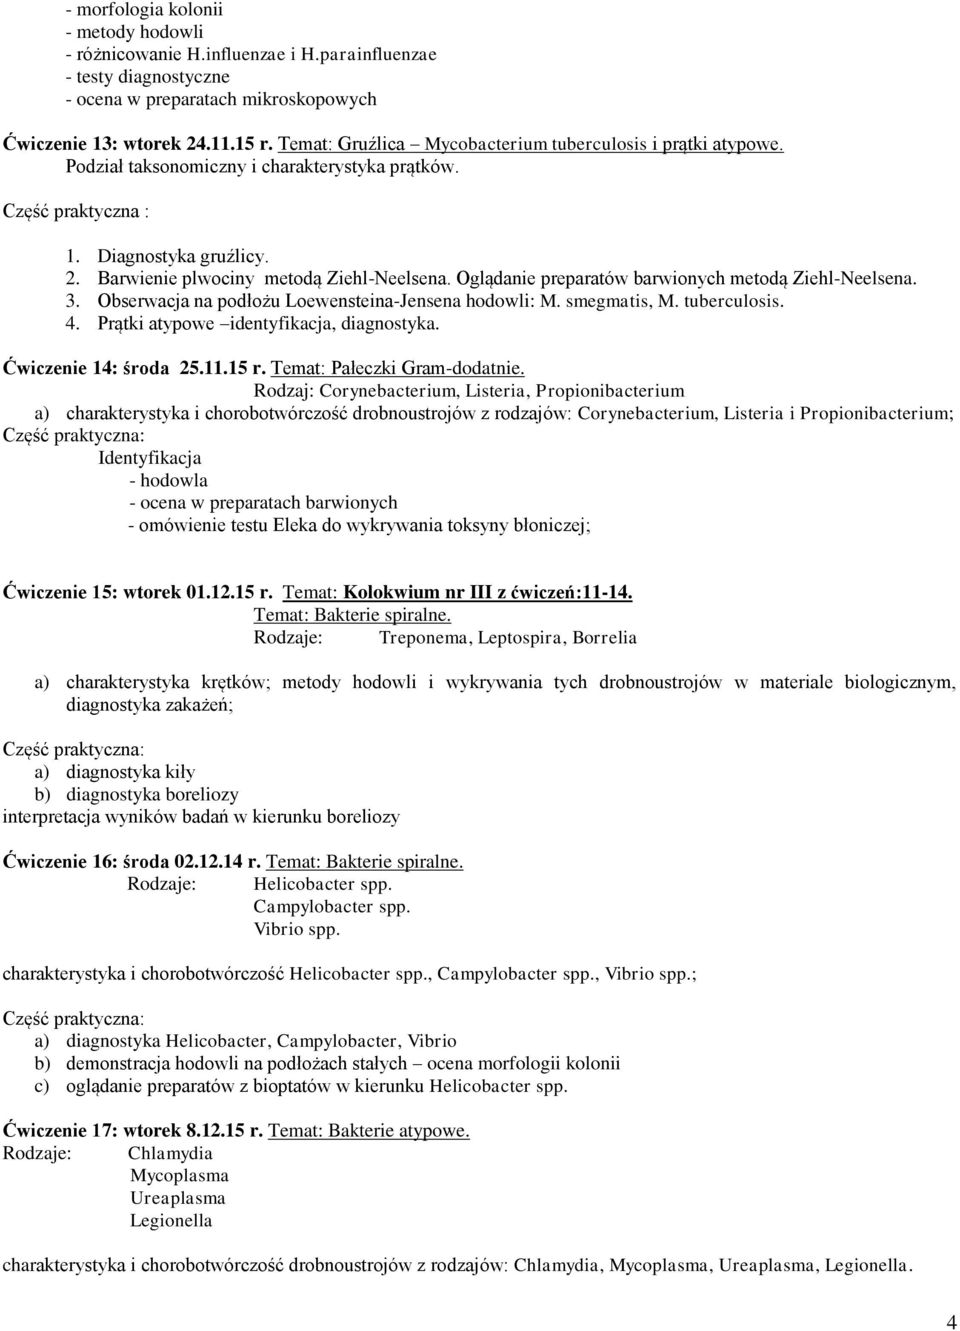 Oglądanie preparatów barwionych metodą Ziehl-Neelsena. 3. Obserwacja na podłożu Loewensteina-Jensena hodowli: M. smegmatis, M. tuberculosis. 4. Prątki atypowe identyfikacja, diagnostyka.